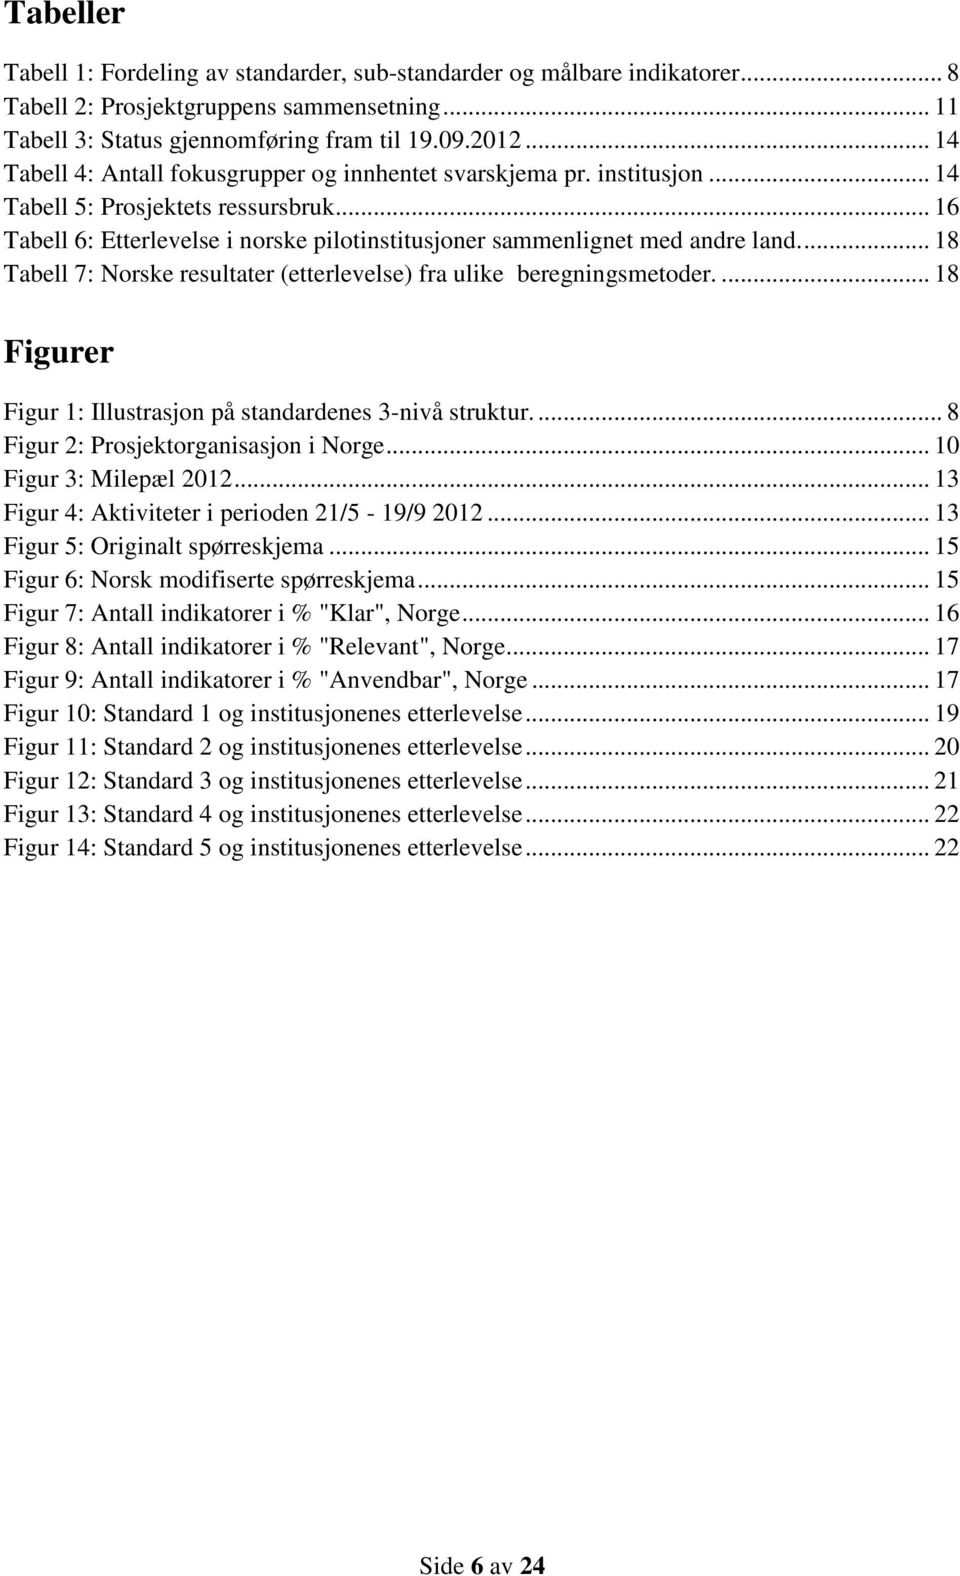 ... 18 Tabell 7: Norske resultater (etterlevelse) fra ulike beregningsmetoder.... 18 Figurer Figur 1: Illustrasjon på standardenes 3-nivå struktur.... 8 Figur 2: Prosjektorganisasjon i Norge.